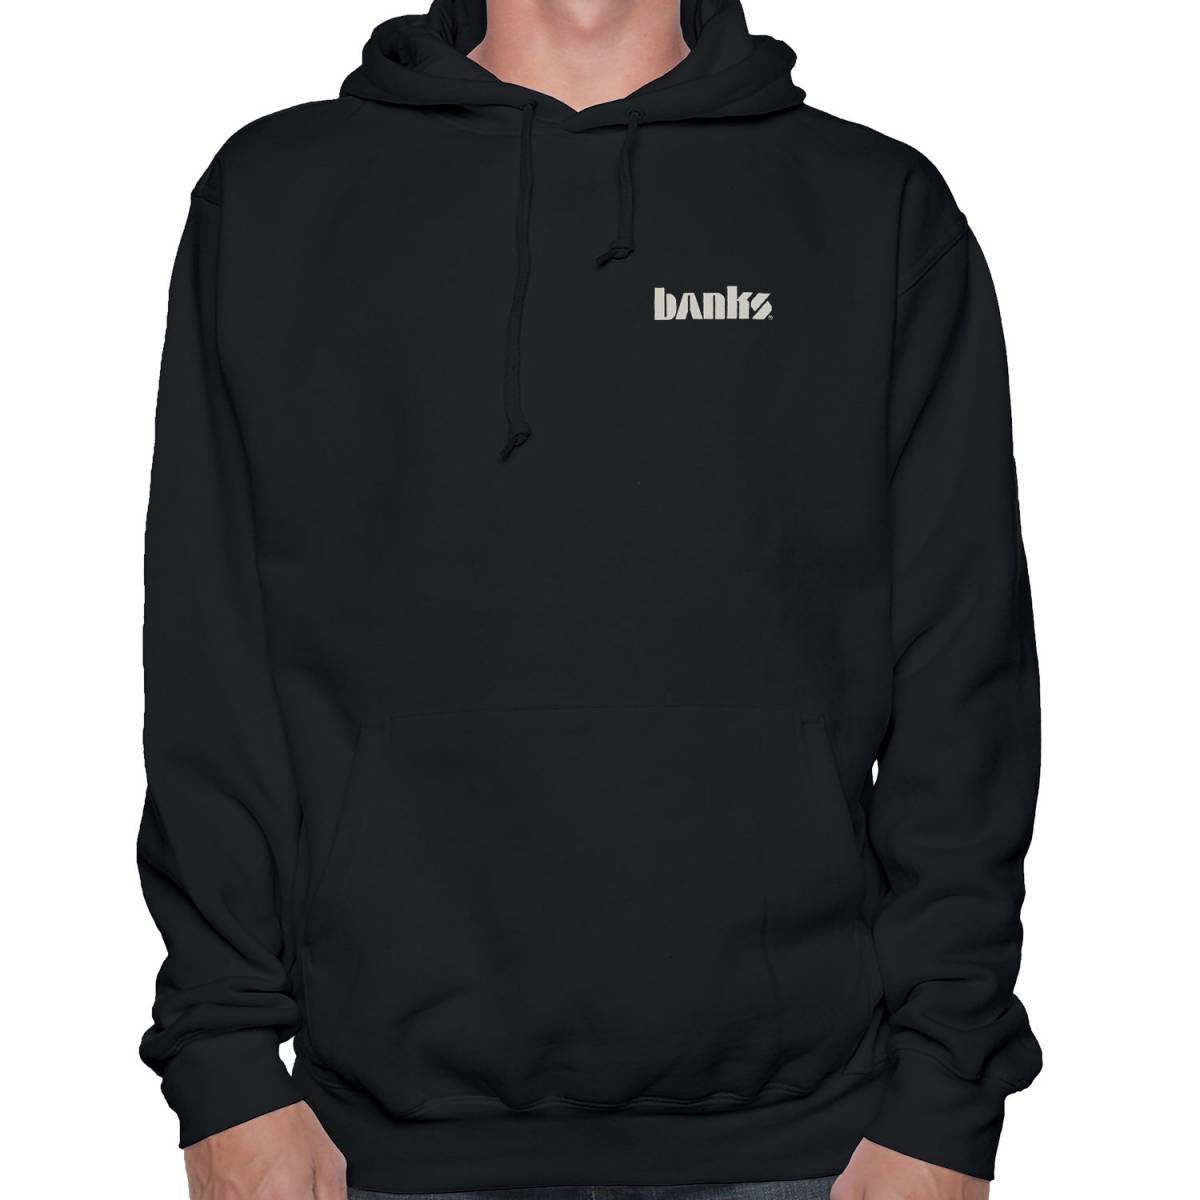 Banks hoodie